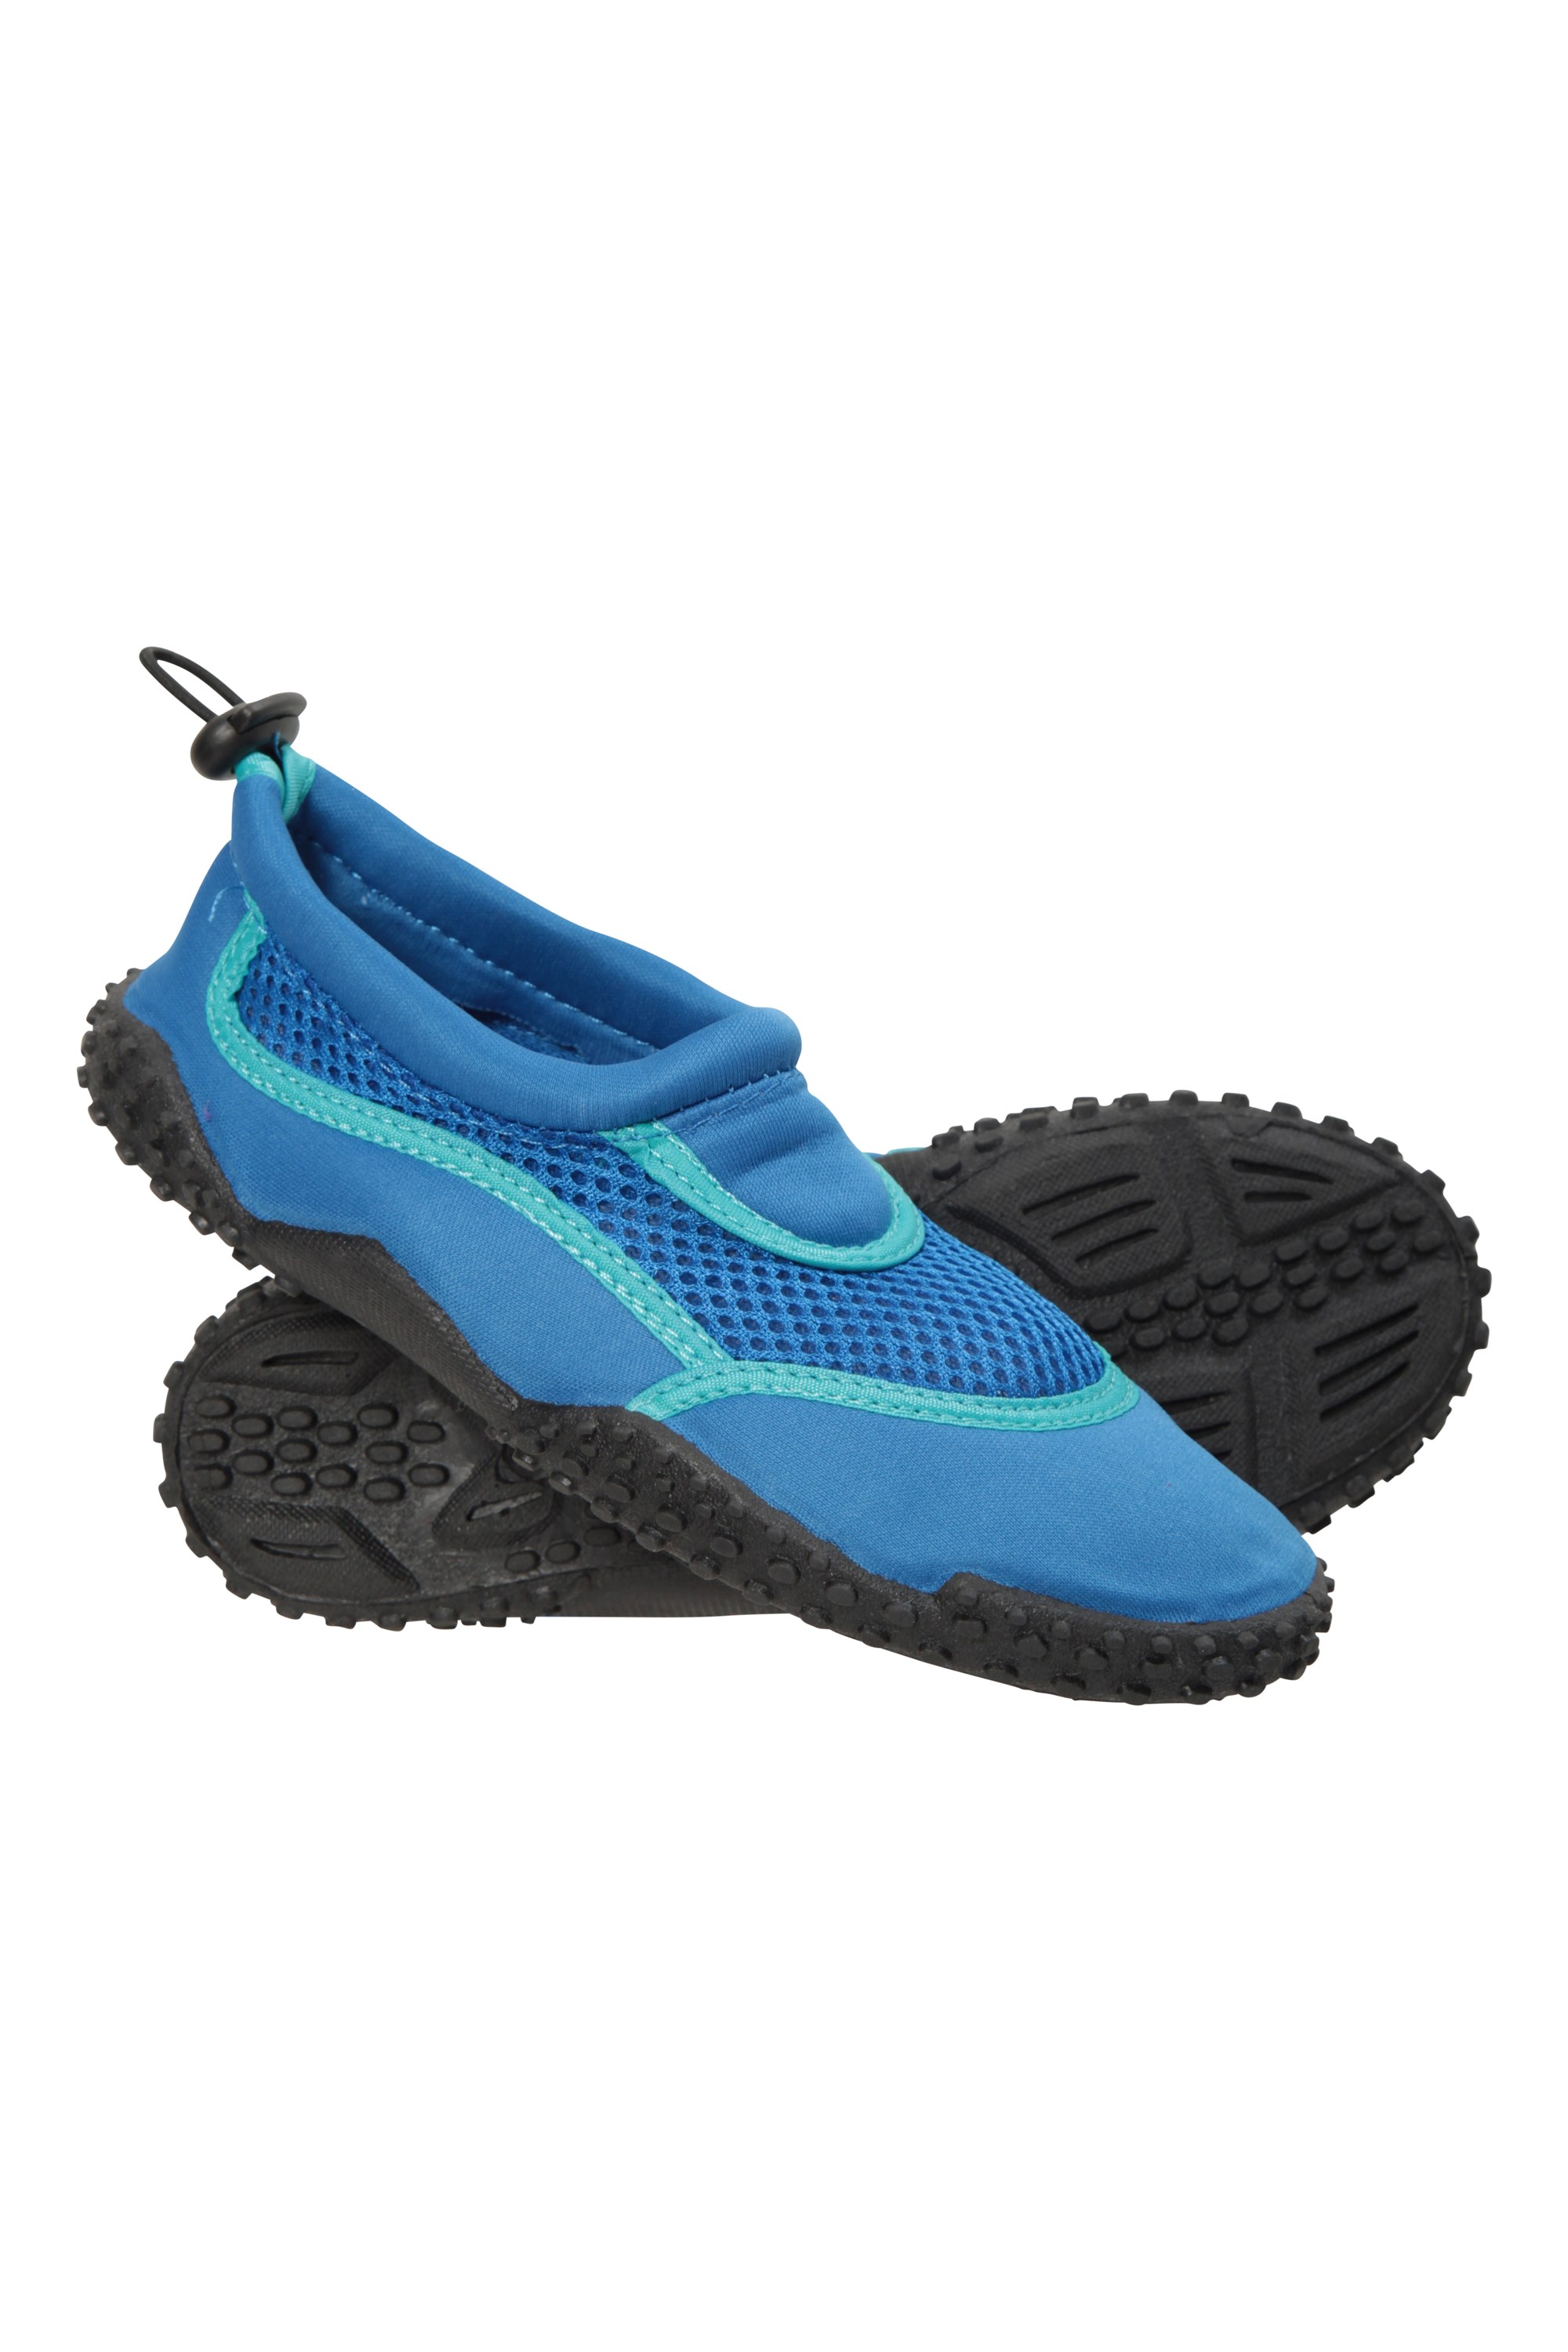 Bermuda Kids Adjustable Aqua Shoes - Blue